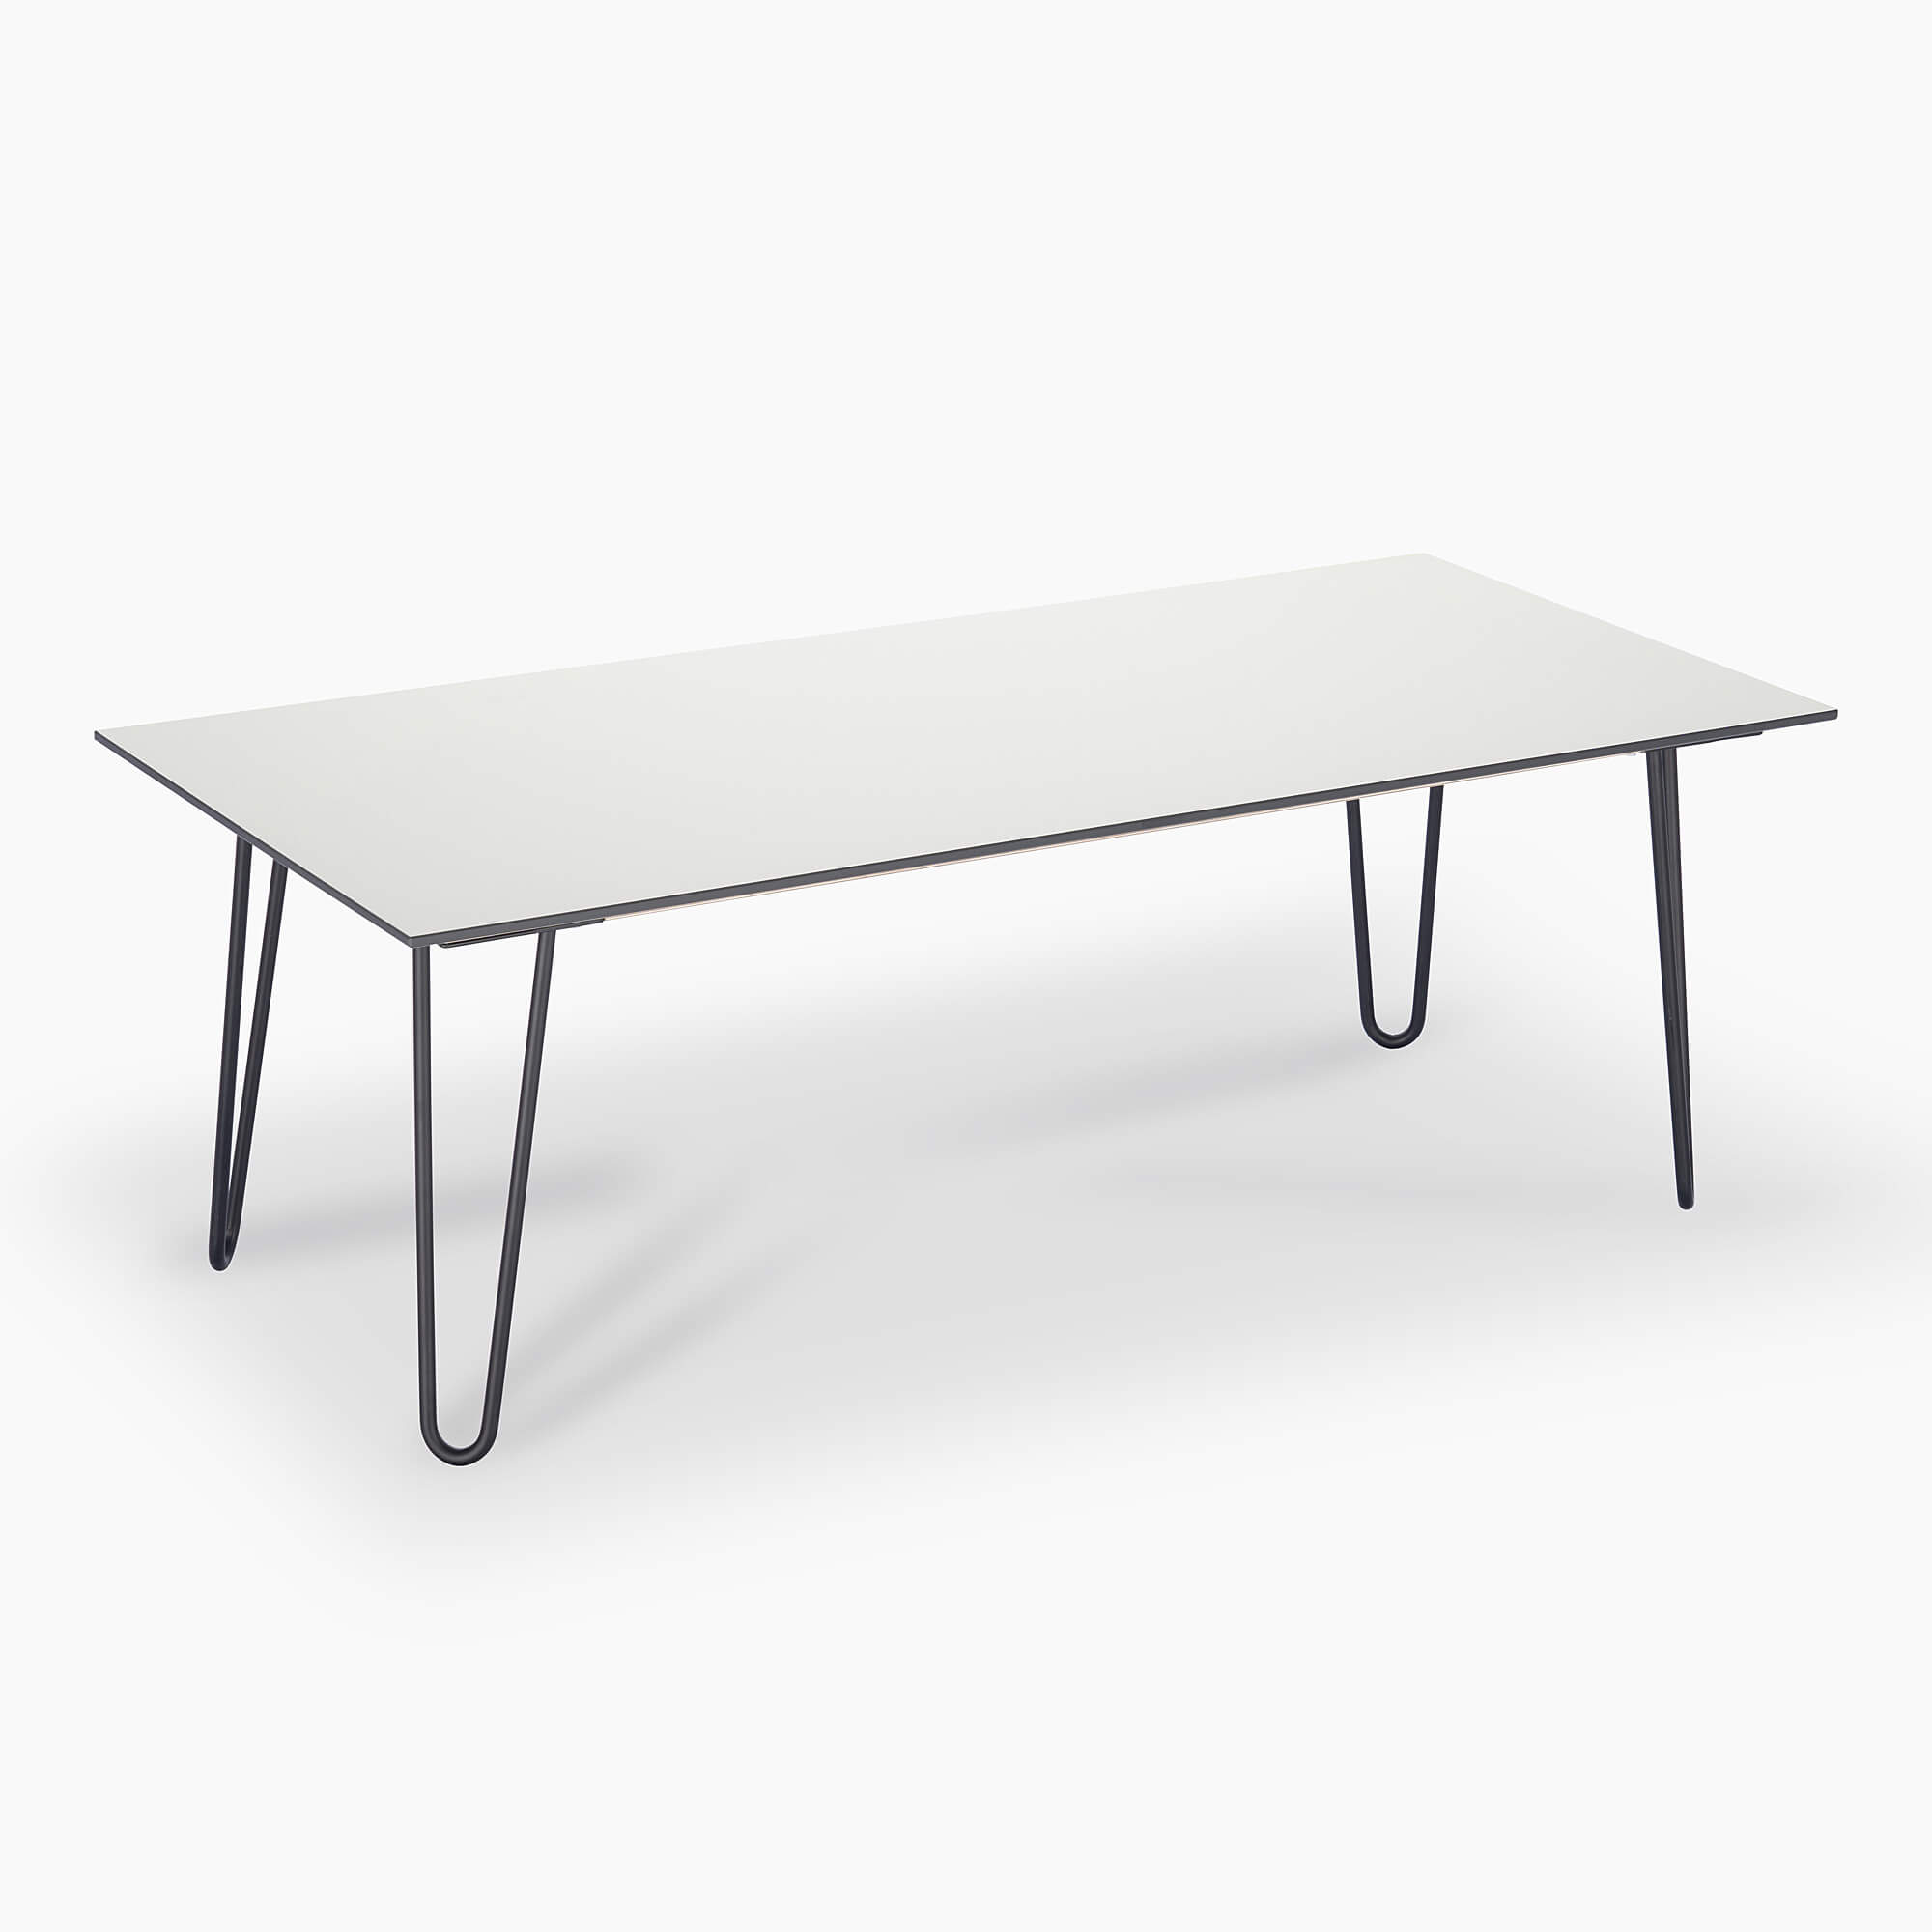 Large-white-sofa-table-modern-rectangular-black-metal-legs